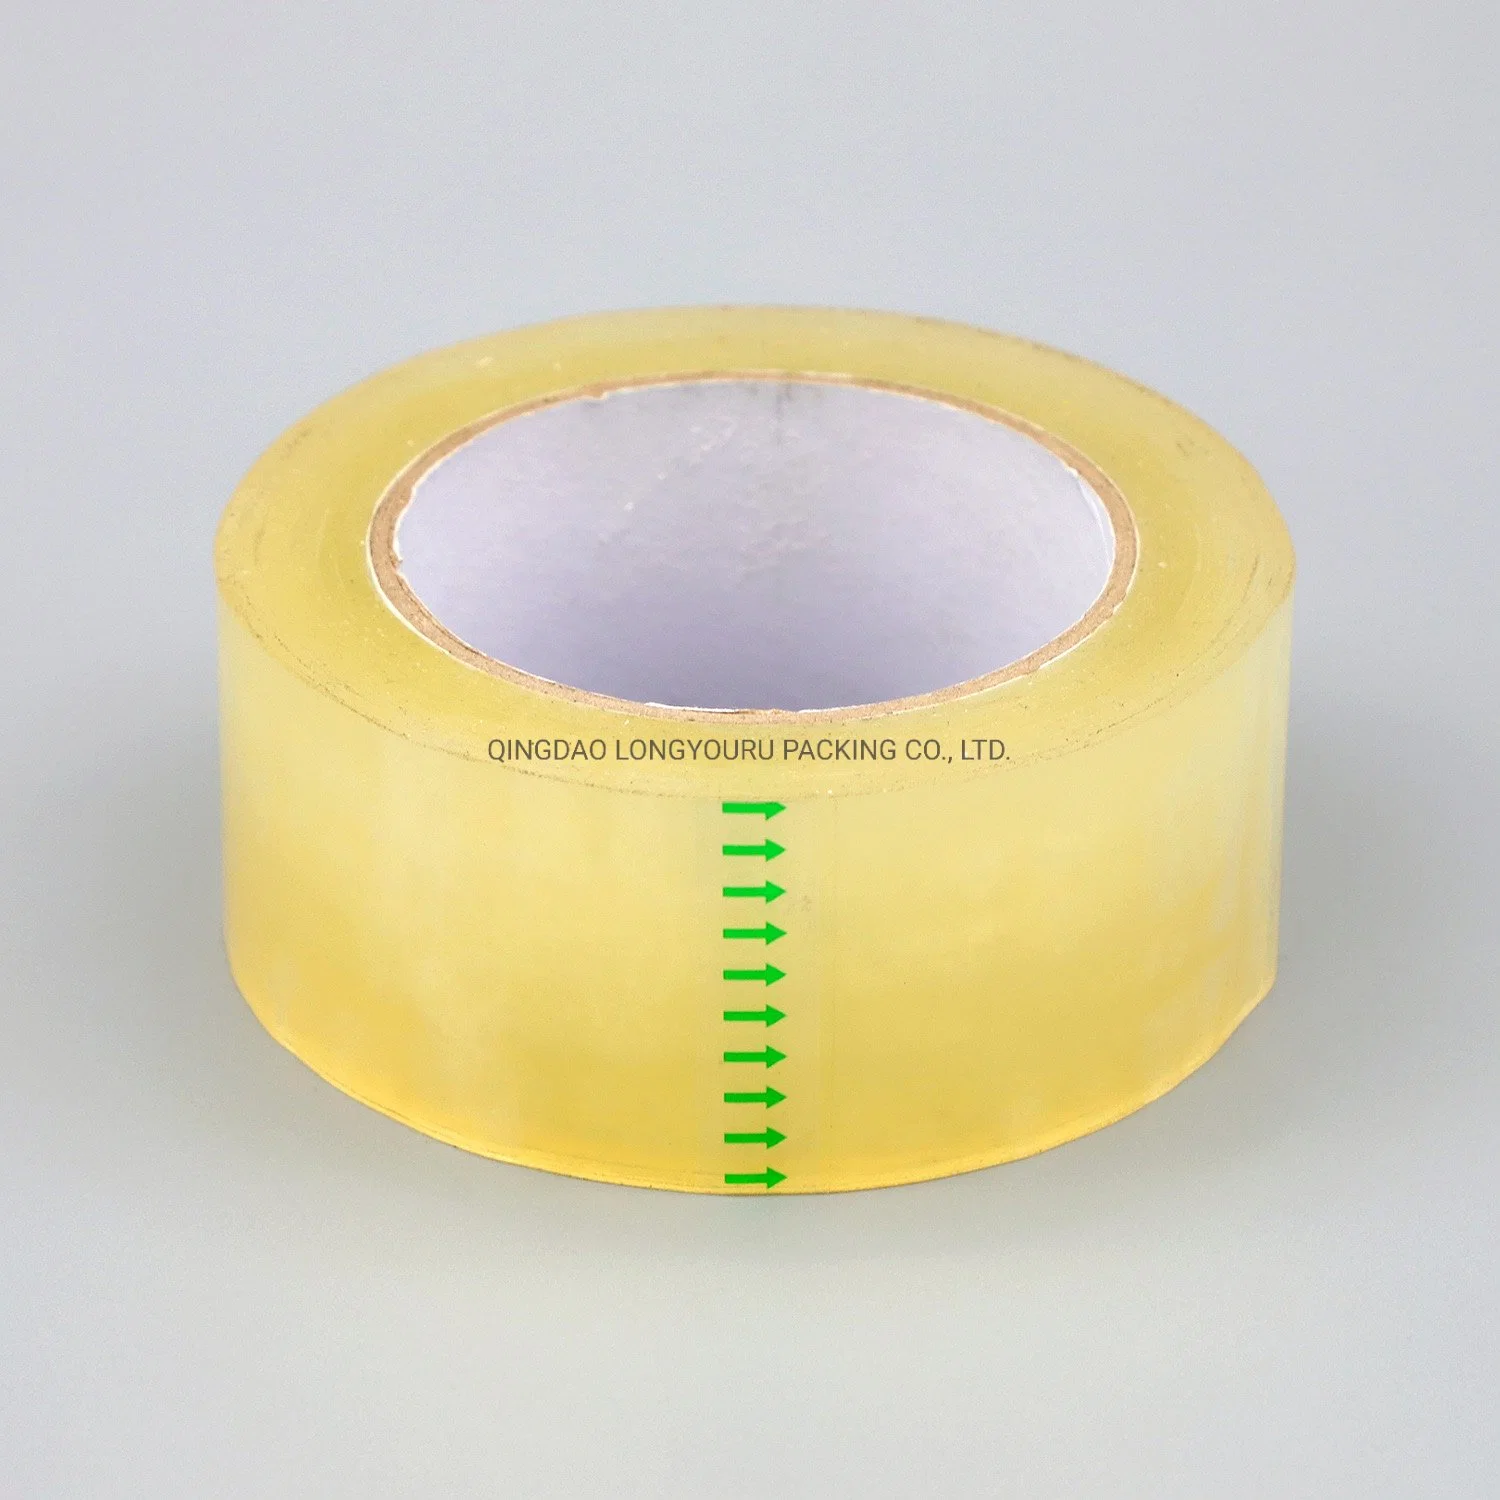 BOPP Adhesive Tape/Carton Sealing Tape/Packaging Tape